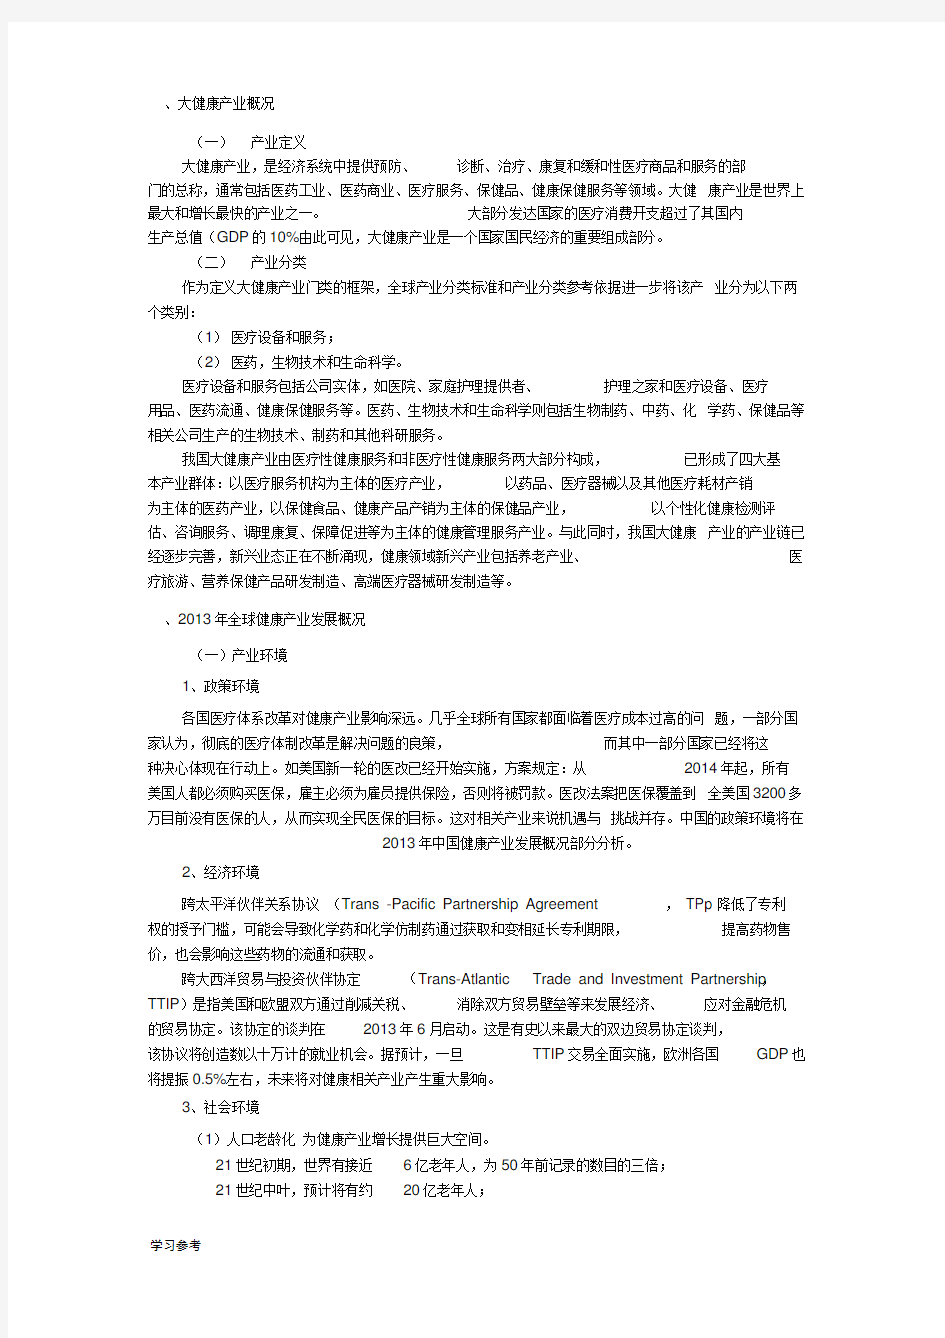 中国大健康产业分析报告文案